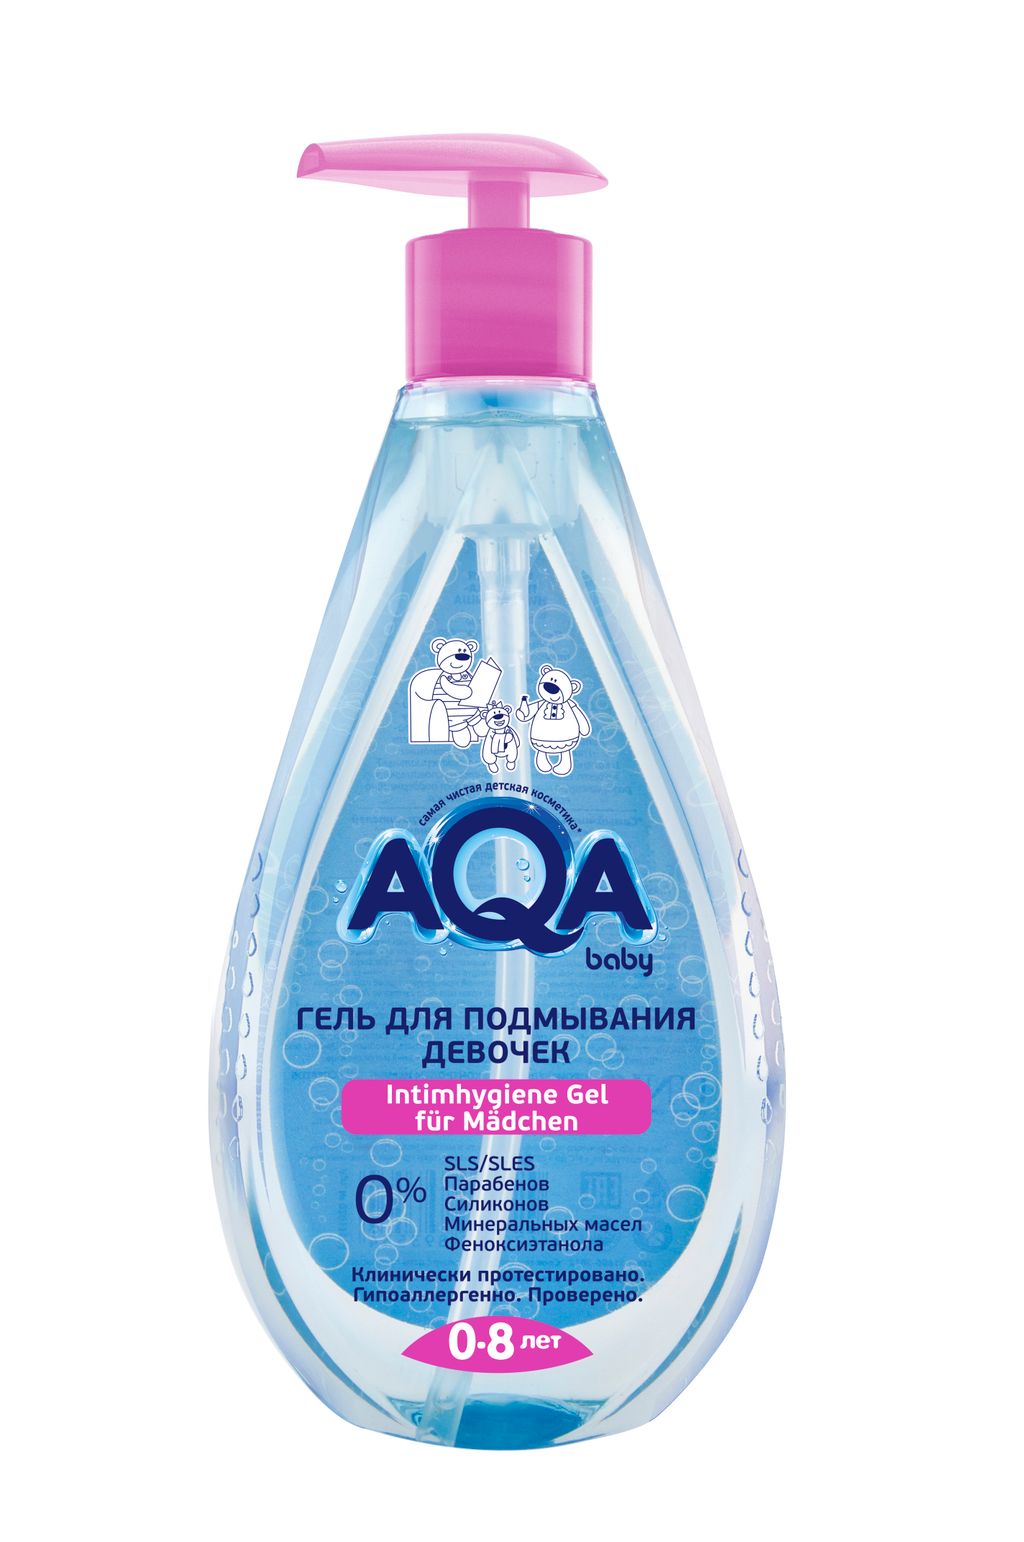 фото упаковки AQA baby гель для подмывания девочек